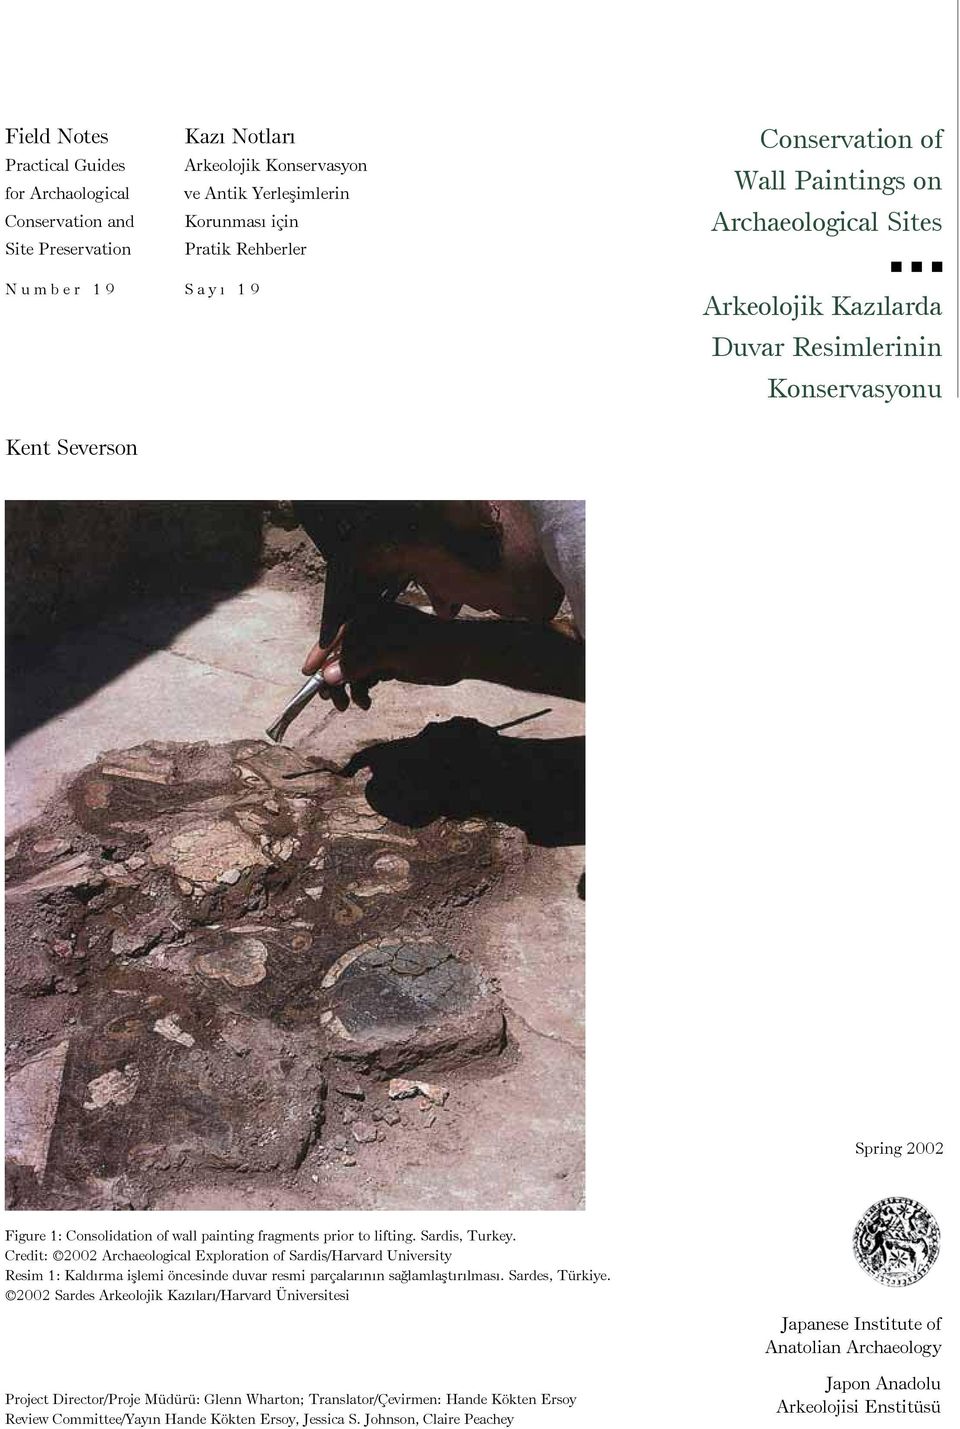 lifting. Sardis, Turkey. Credit: 2002 Archaeological Exploration of Sardis/Harvard University Resim 1: Kaldırma işlemi öncesinde duvar resmi parçalarının sağlamlaştırılması. Sardes, Türkiye.